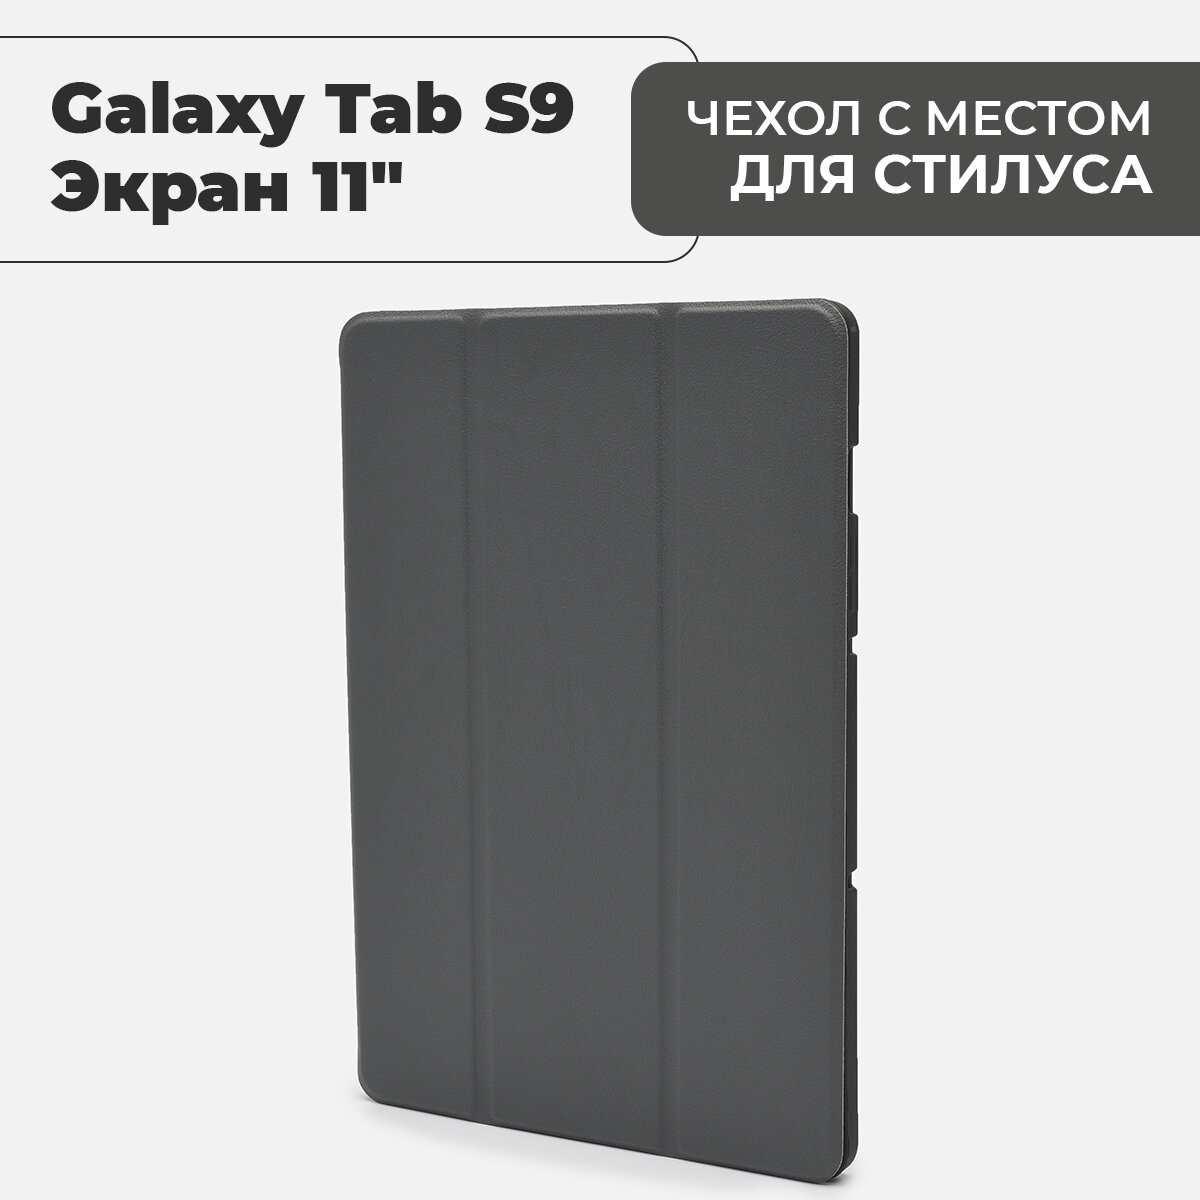 Чехол для планшета Samsung Galaxy Tab S9 (экран 11") с местом для стилуса, серый